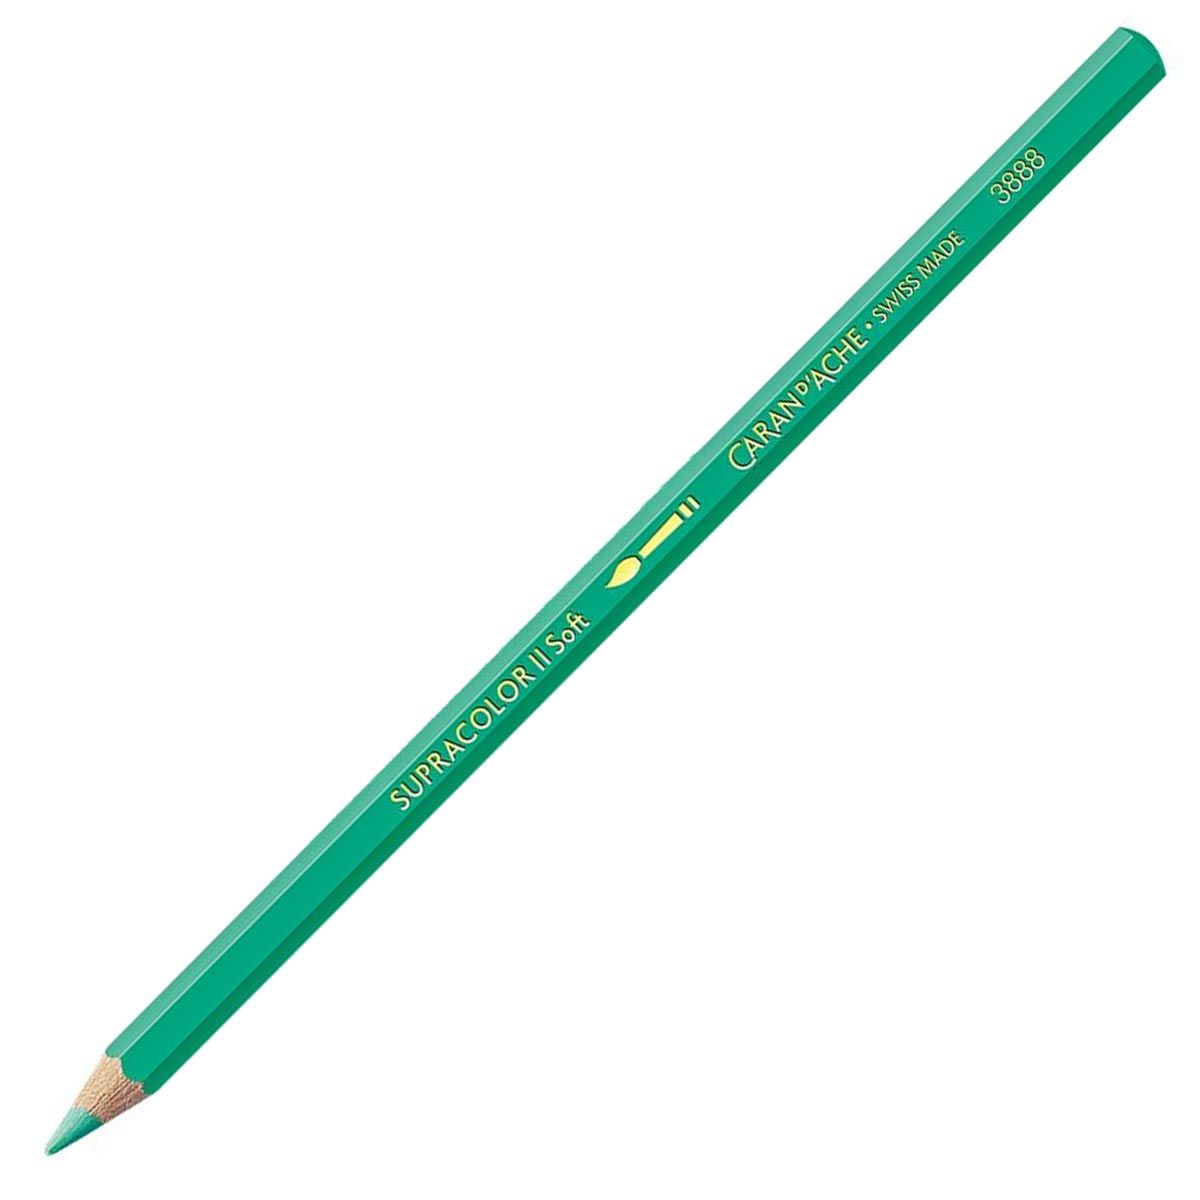 Caran d'Ache Supracolor ll Soft Aquarelle Pencil - Greyish Green 215